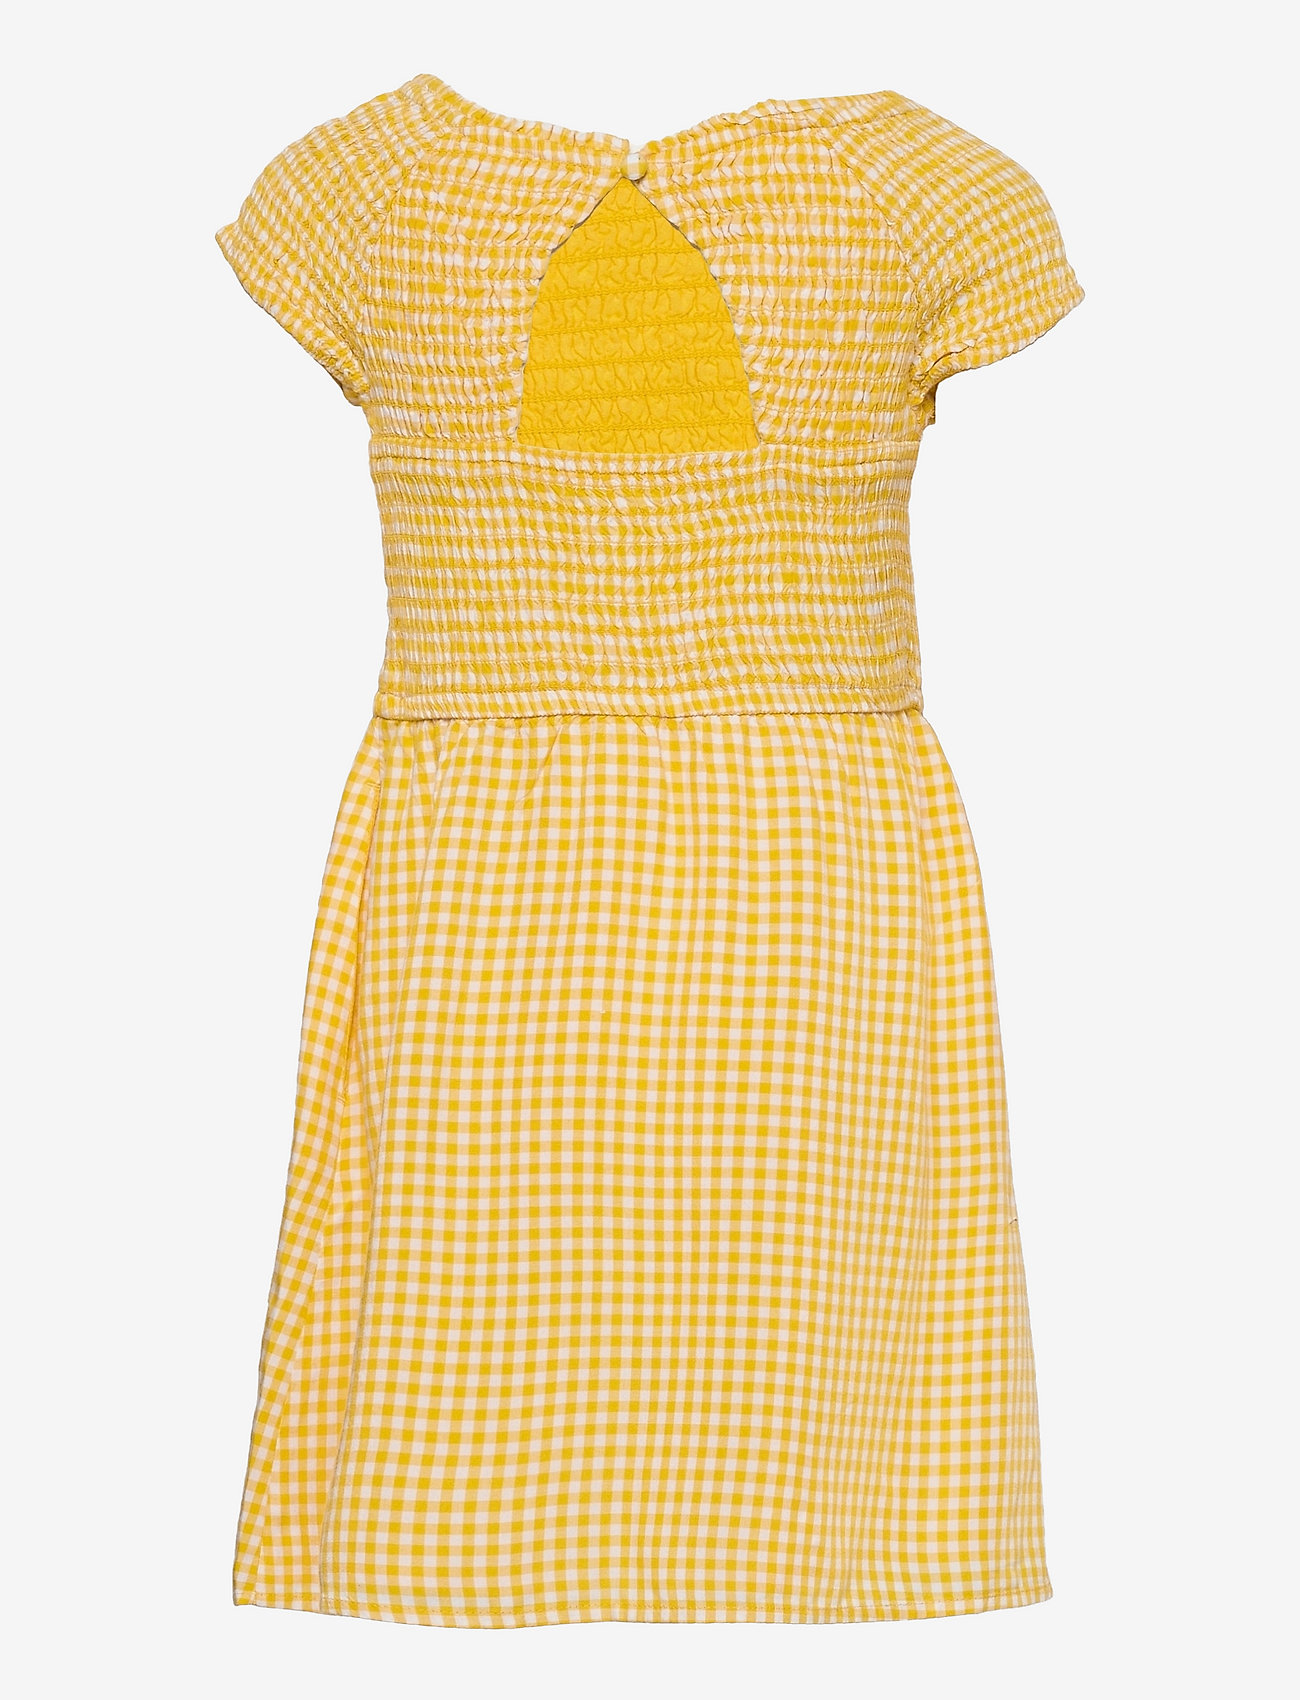 Abercrombie & Fitch - kids GIRLS DRESSES - sukienki codzienne z krótkim rękawem - light yellow patt - 1